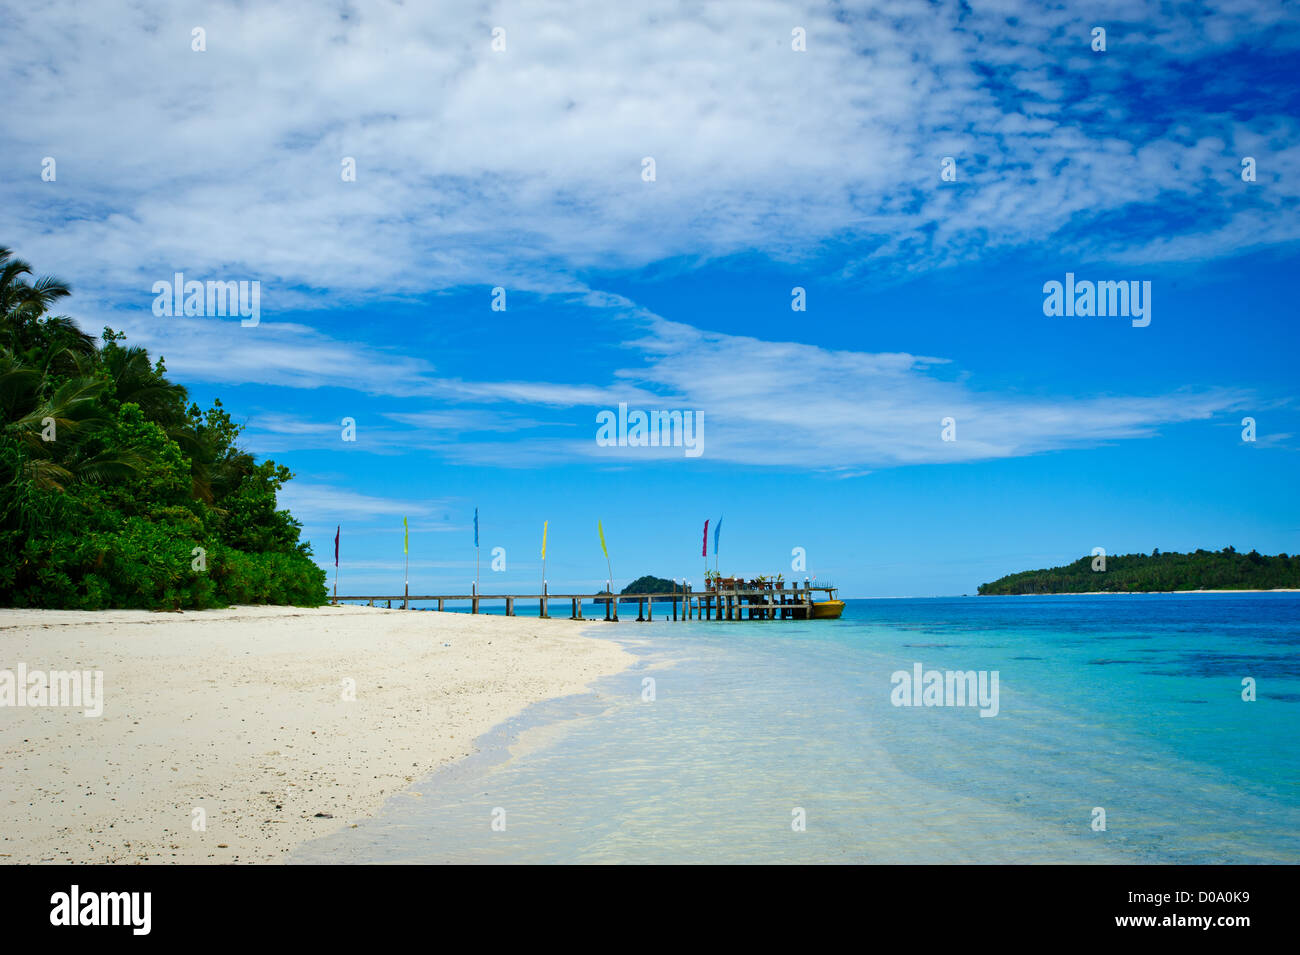 La playa de arena blanca de la isla en el Aloita Mentawai, al oeste de Sumatra, Indonesia. Una joya en el Océano Índico Foto de stock